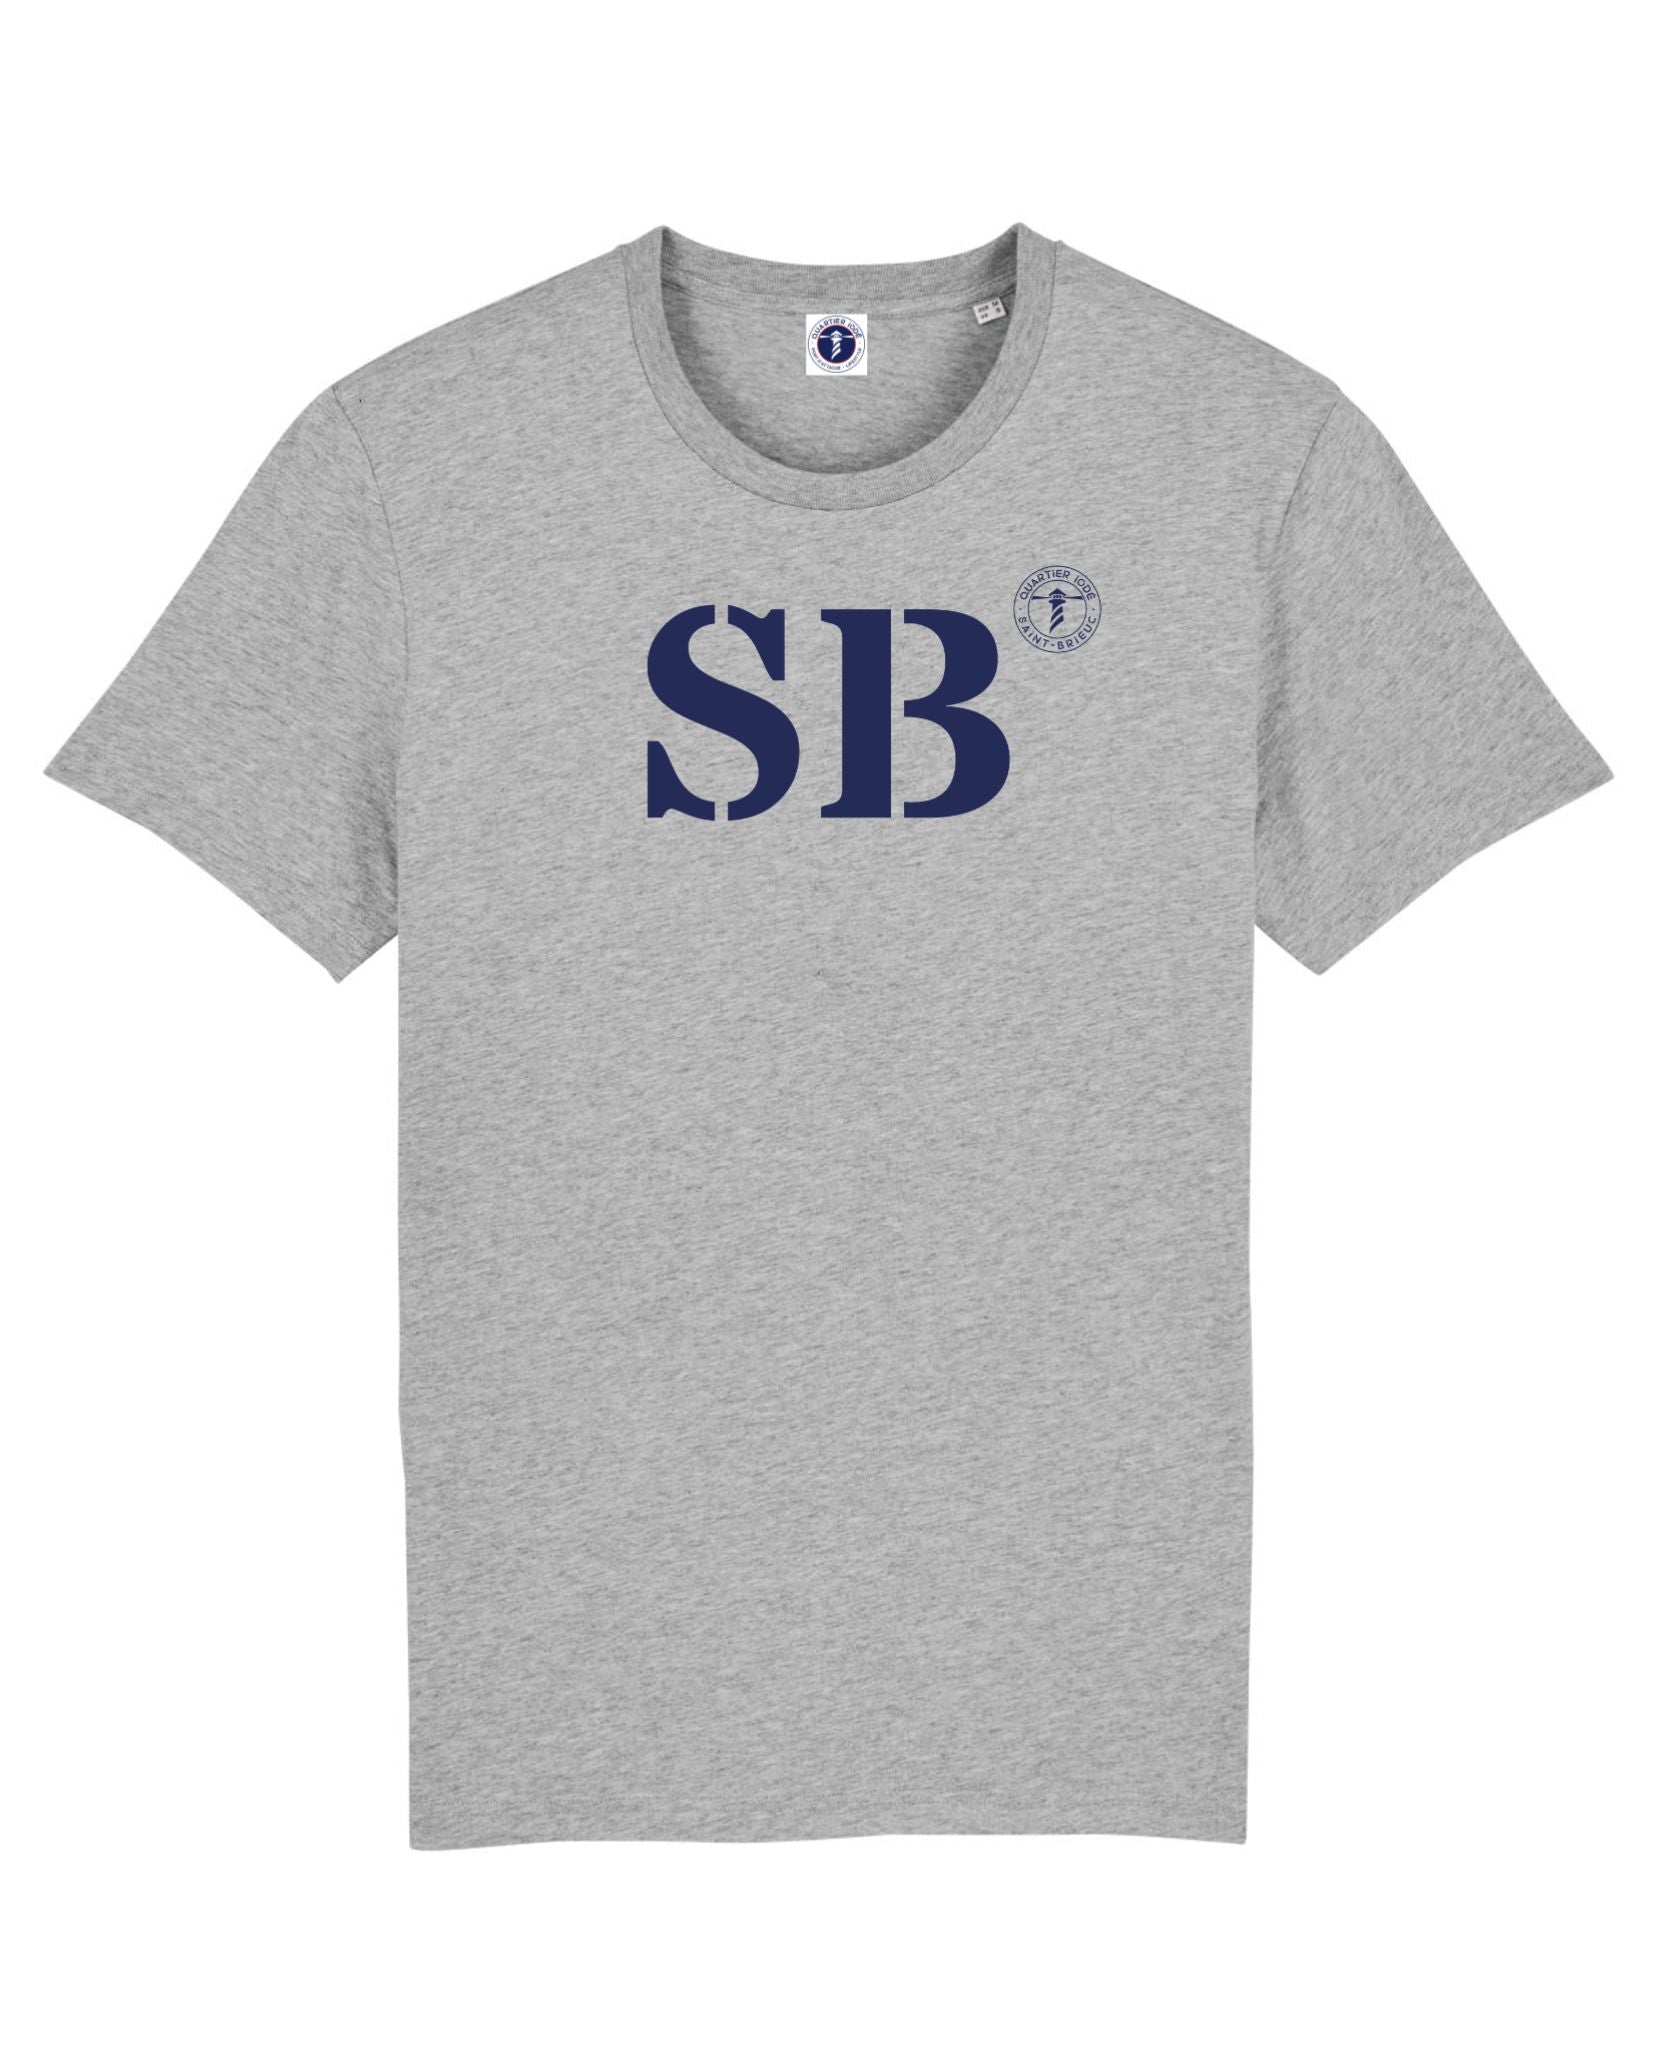 SB pour Saint Brieuc, l'esprit breizh dans ce tshirt gris et bleu de la marque bretonne Quartier Iodé, pour hommes et femmes.